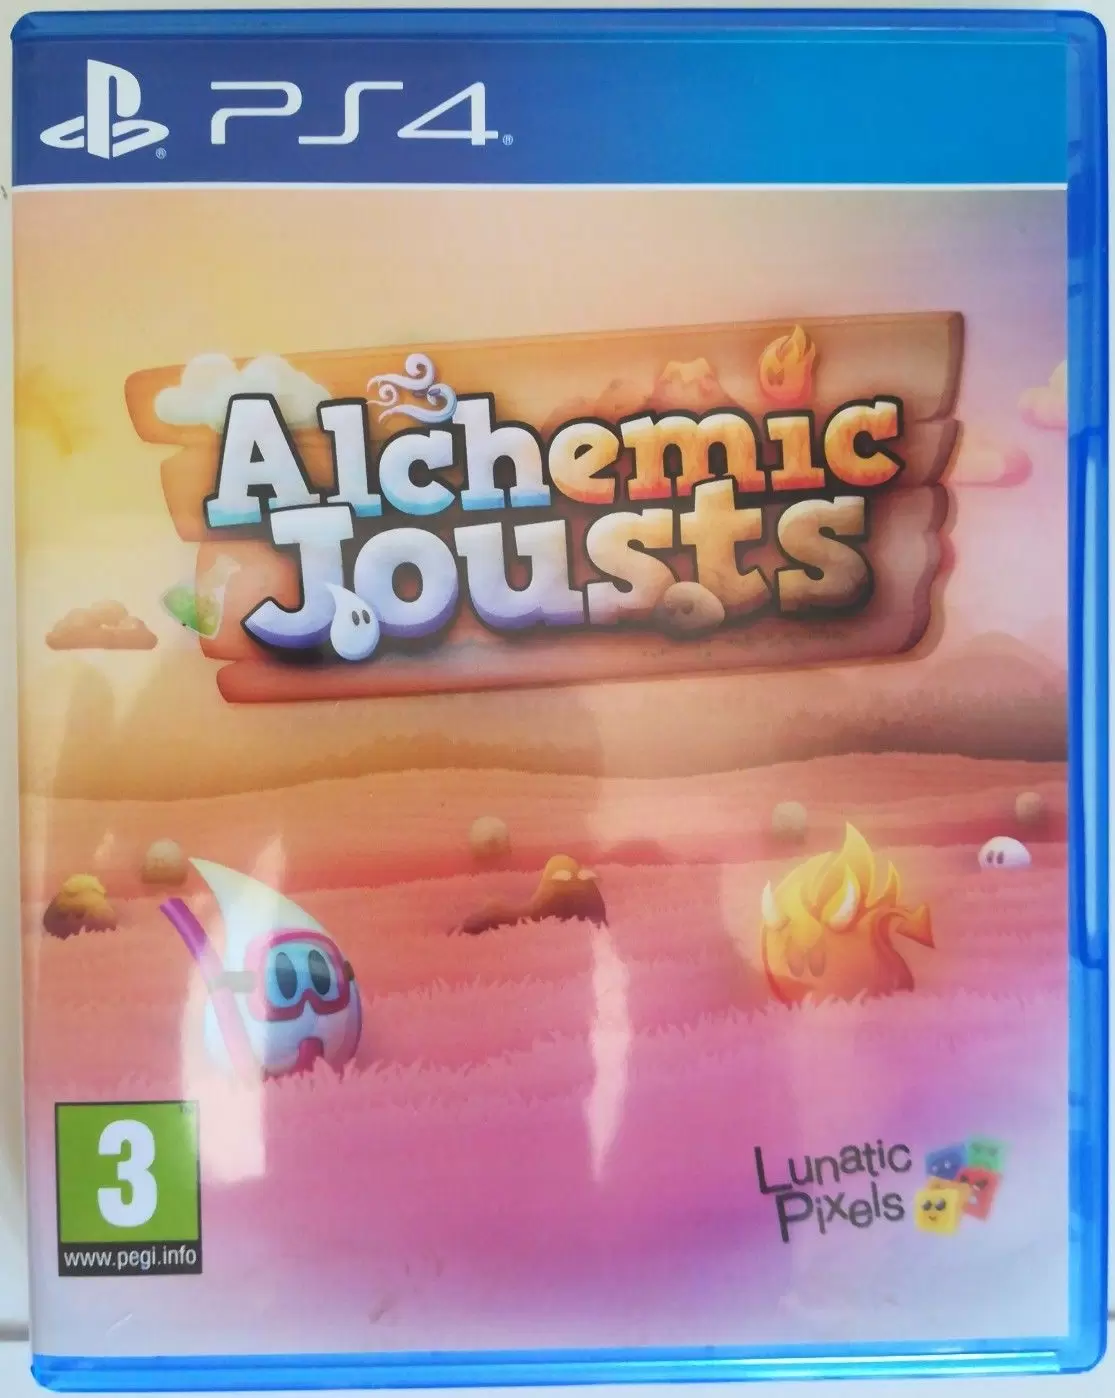 PS4 Games - Alchemic Jousts